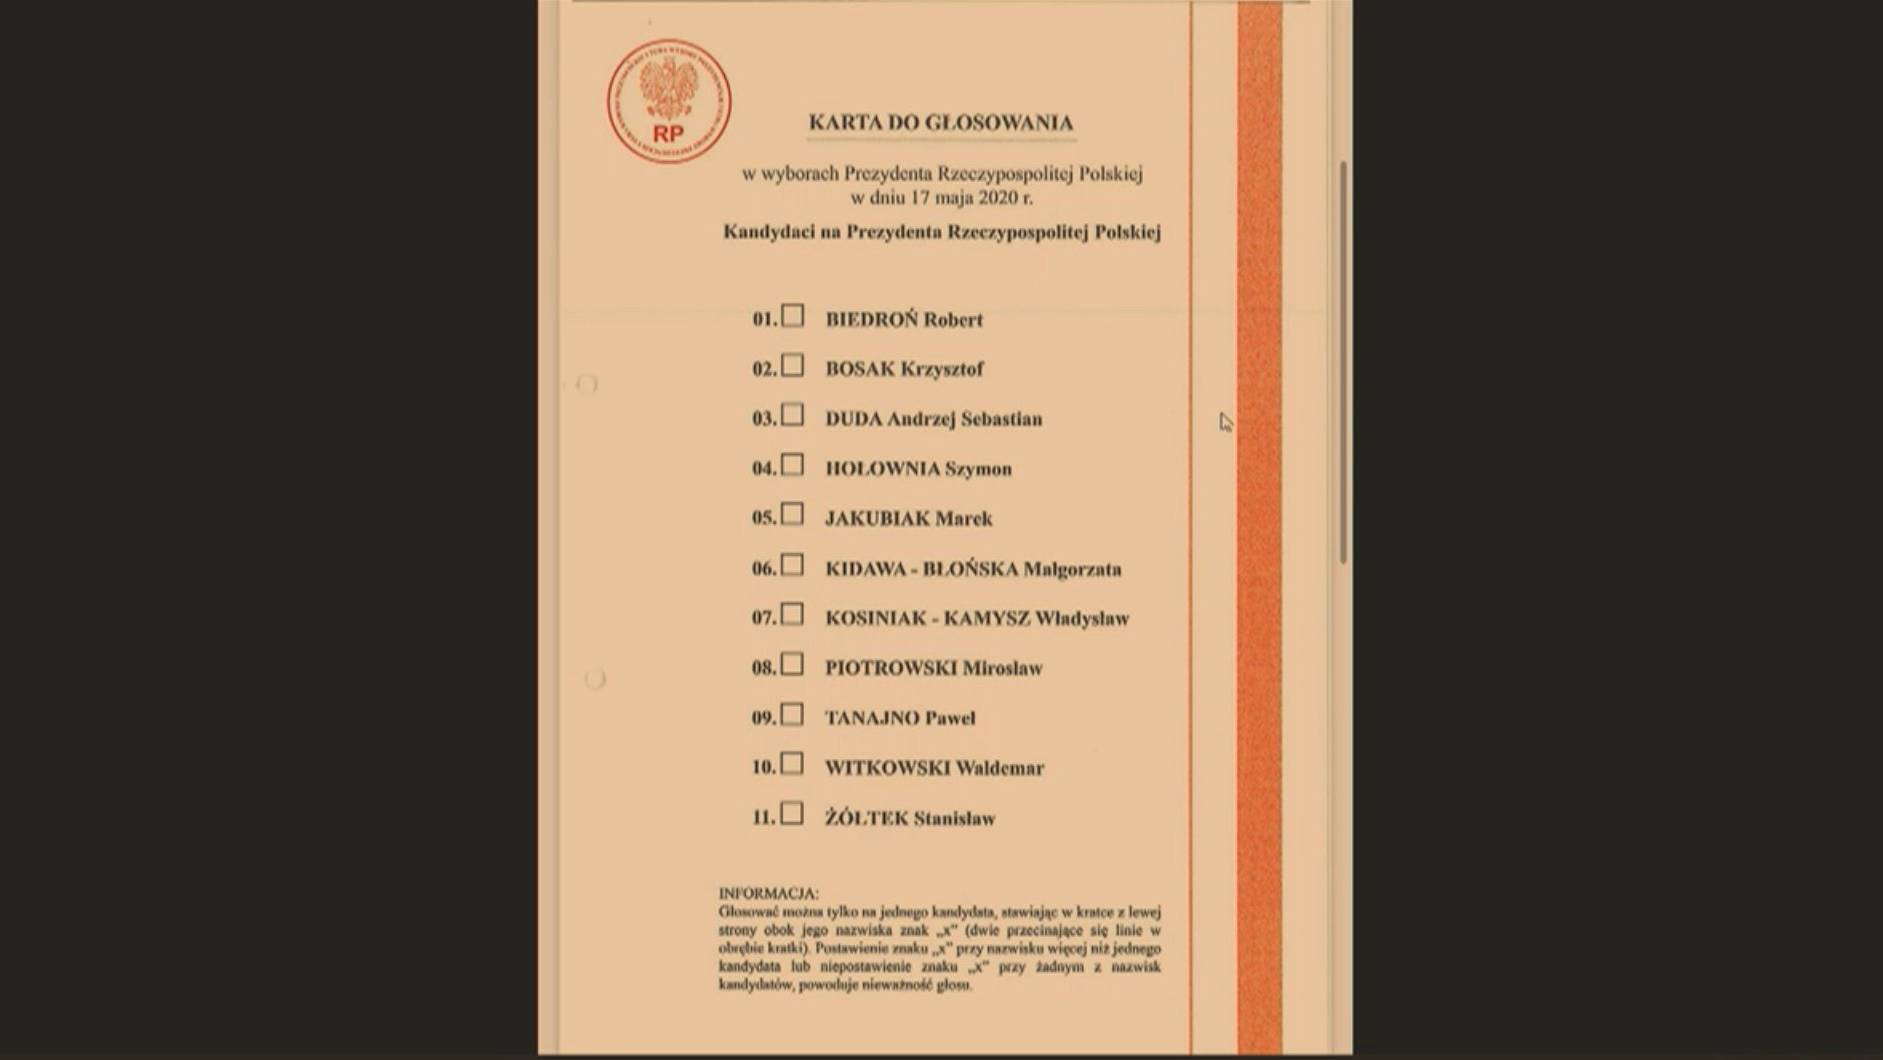 Wzór karty wyborczej z datą 17 maja i nazwiskami kandydatów, w tym Witkowskiego, który w tych wyborach nie kandydował, bo nie zebrał głosów